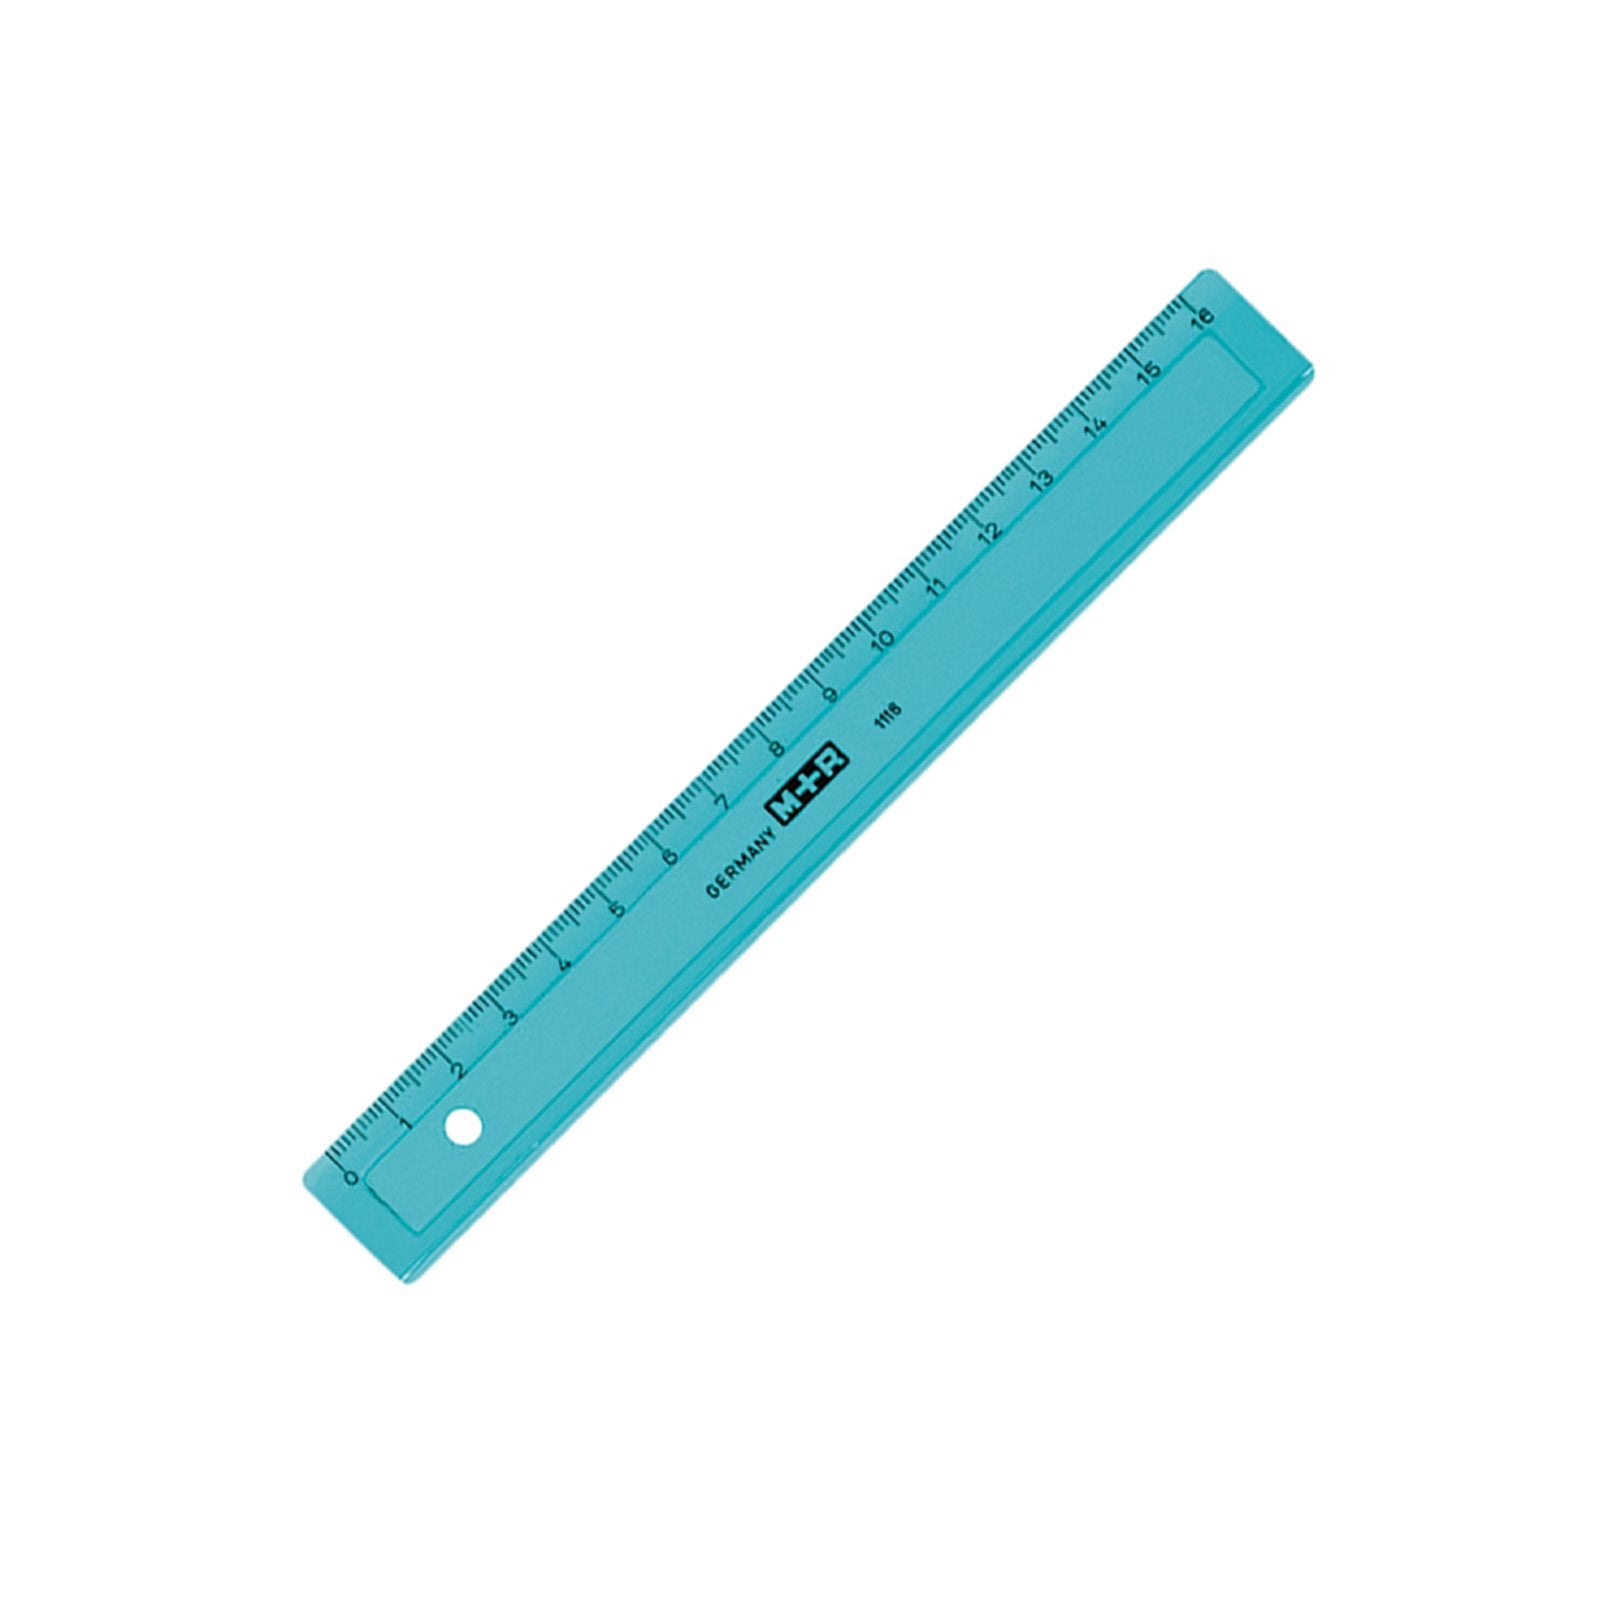 M+R 1116 0150 - Regla de Plástico con Base Biselada, 16 cm